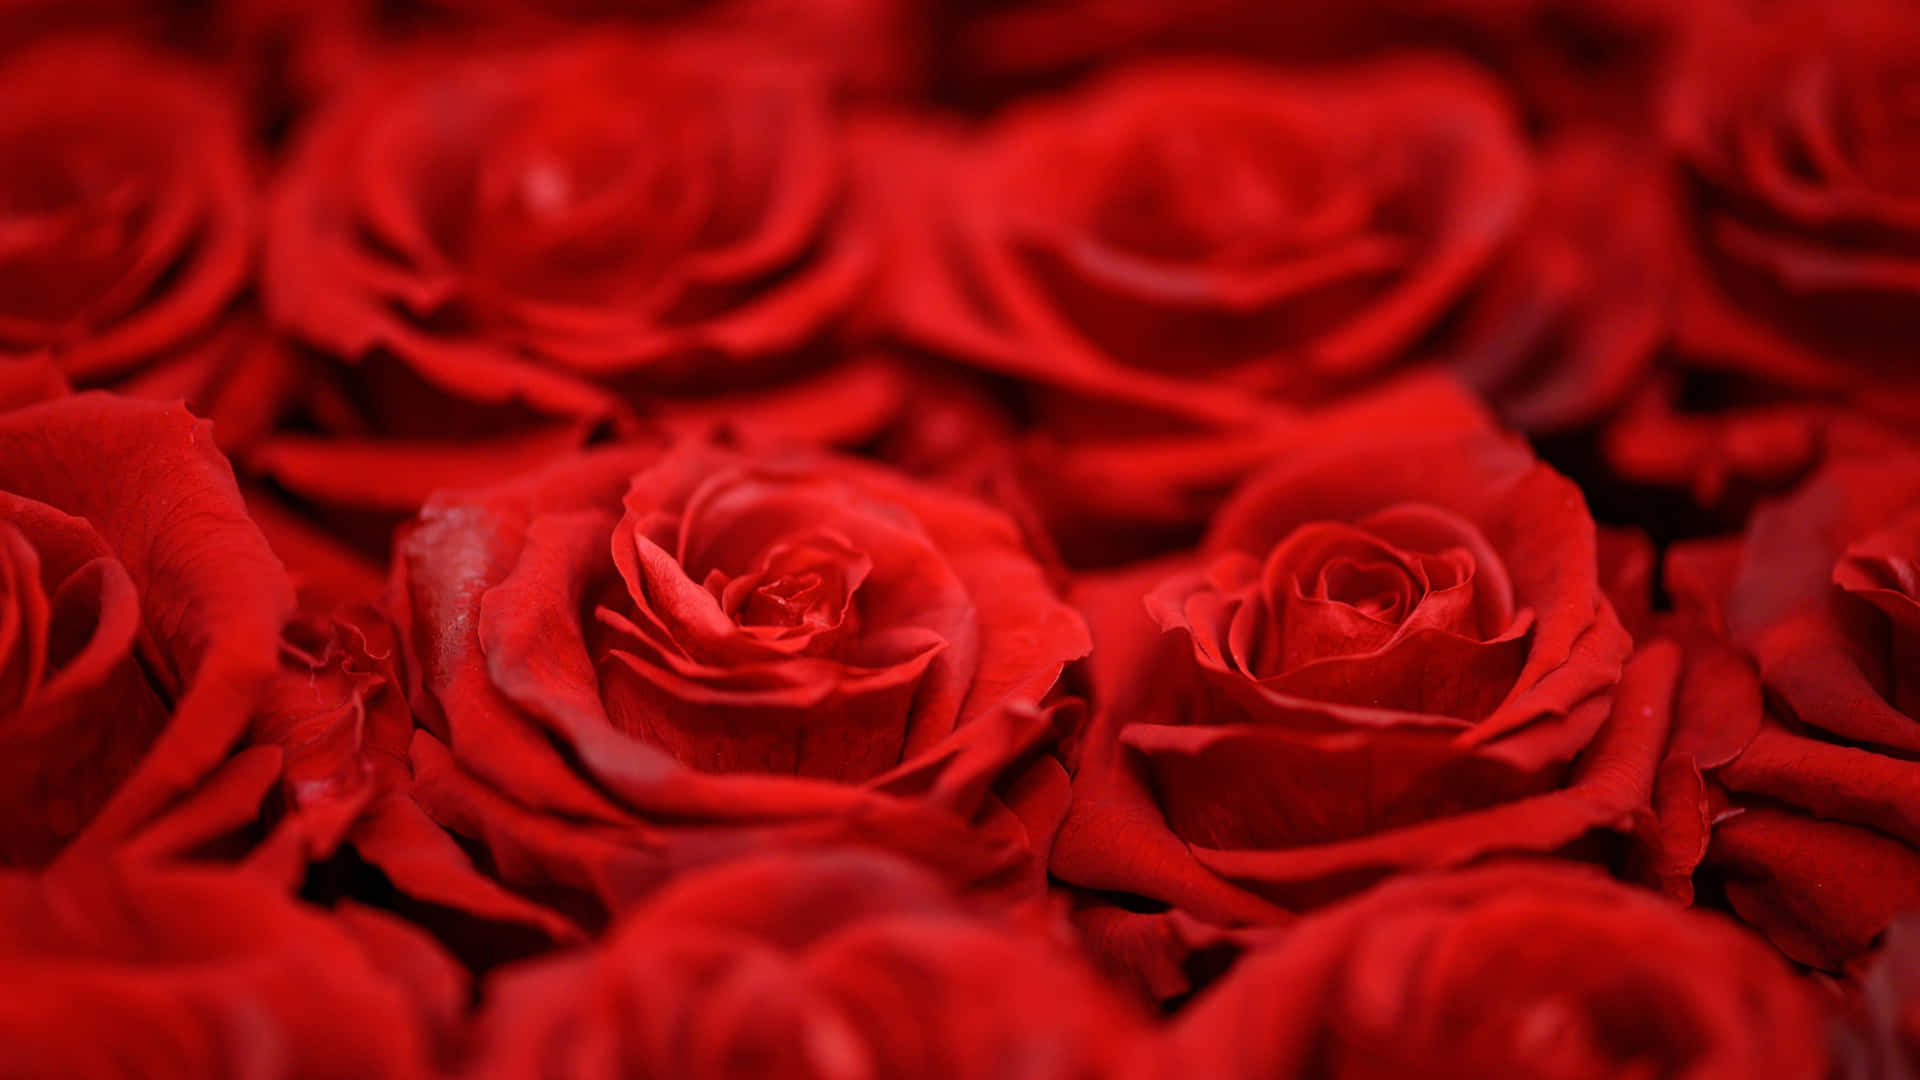 1440phintergrund Mit Leuchtend Roten Rosen